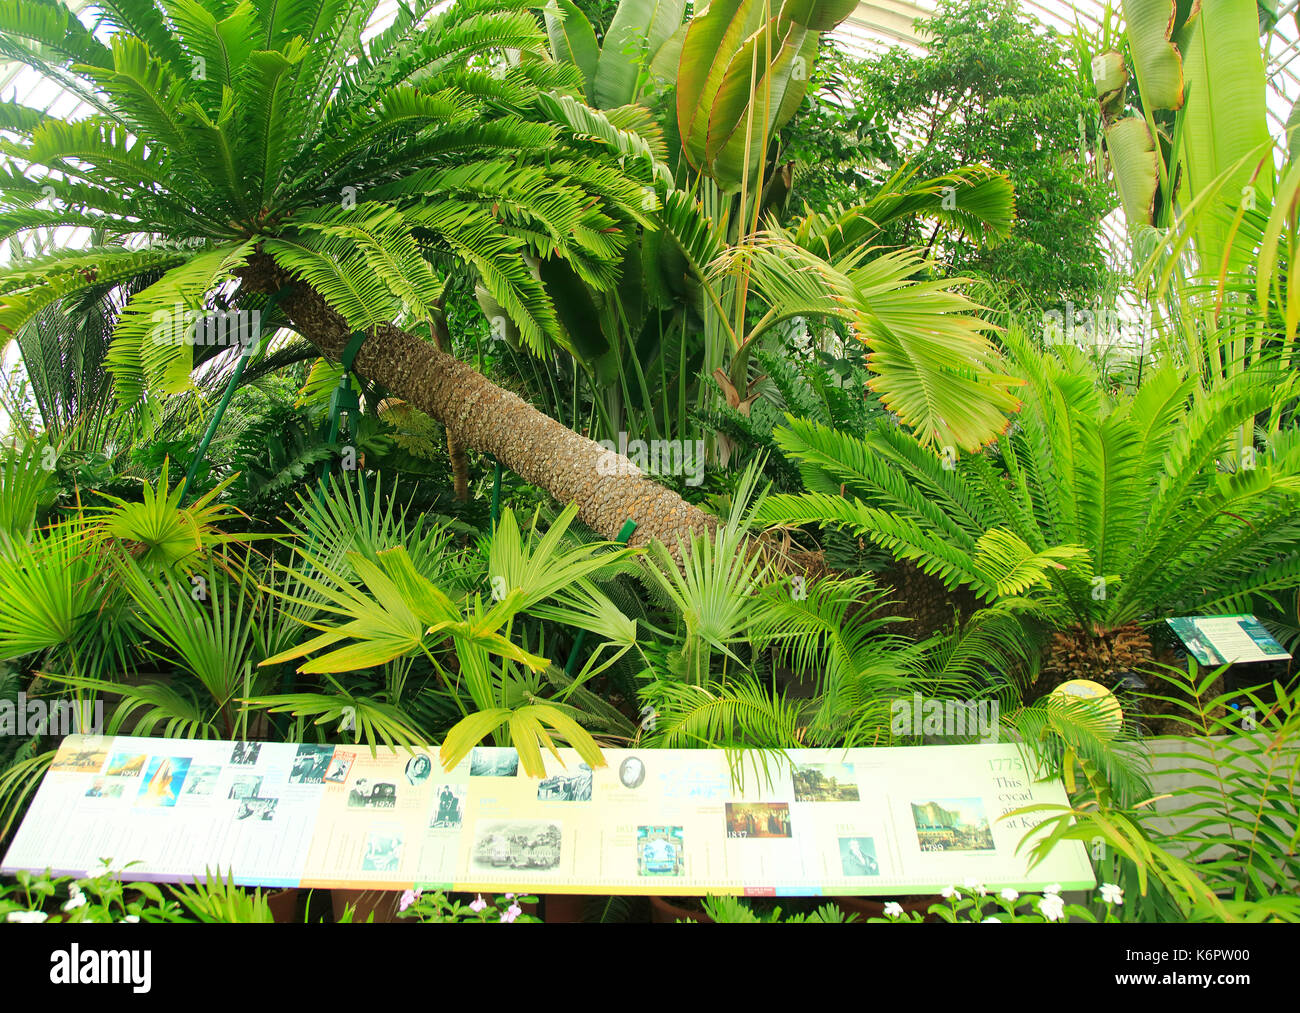 À l'intérieur de la Palm House at Royal Botanic Gardens, Kew, Londres, Angleterre, Royaume-Uni Banque D'Images